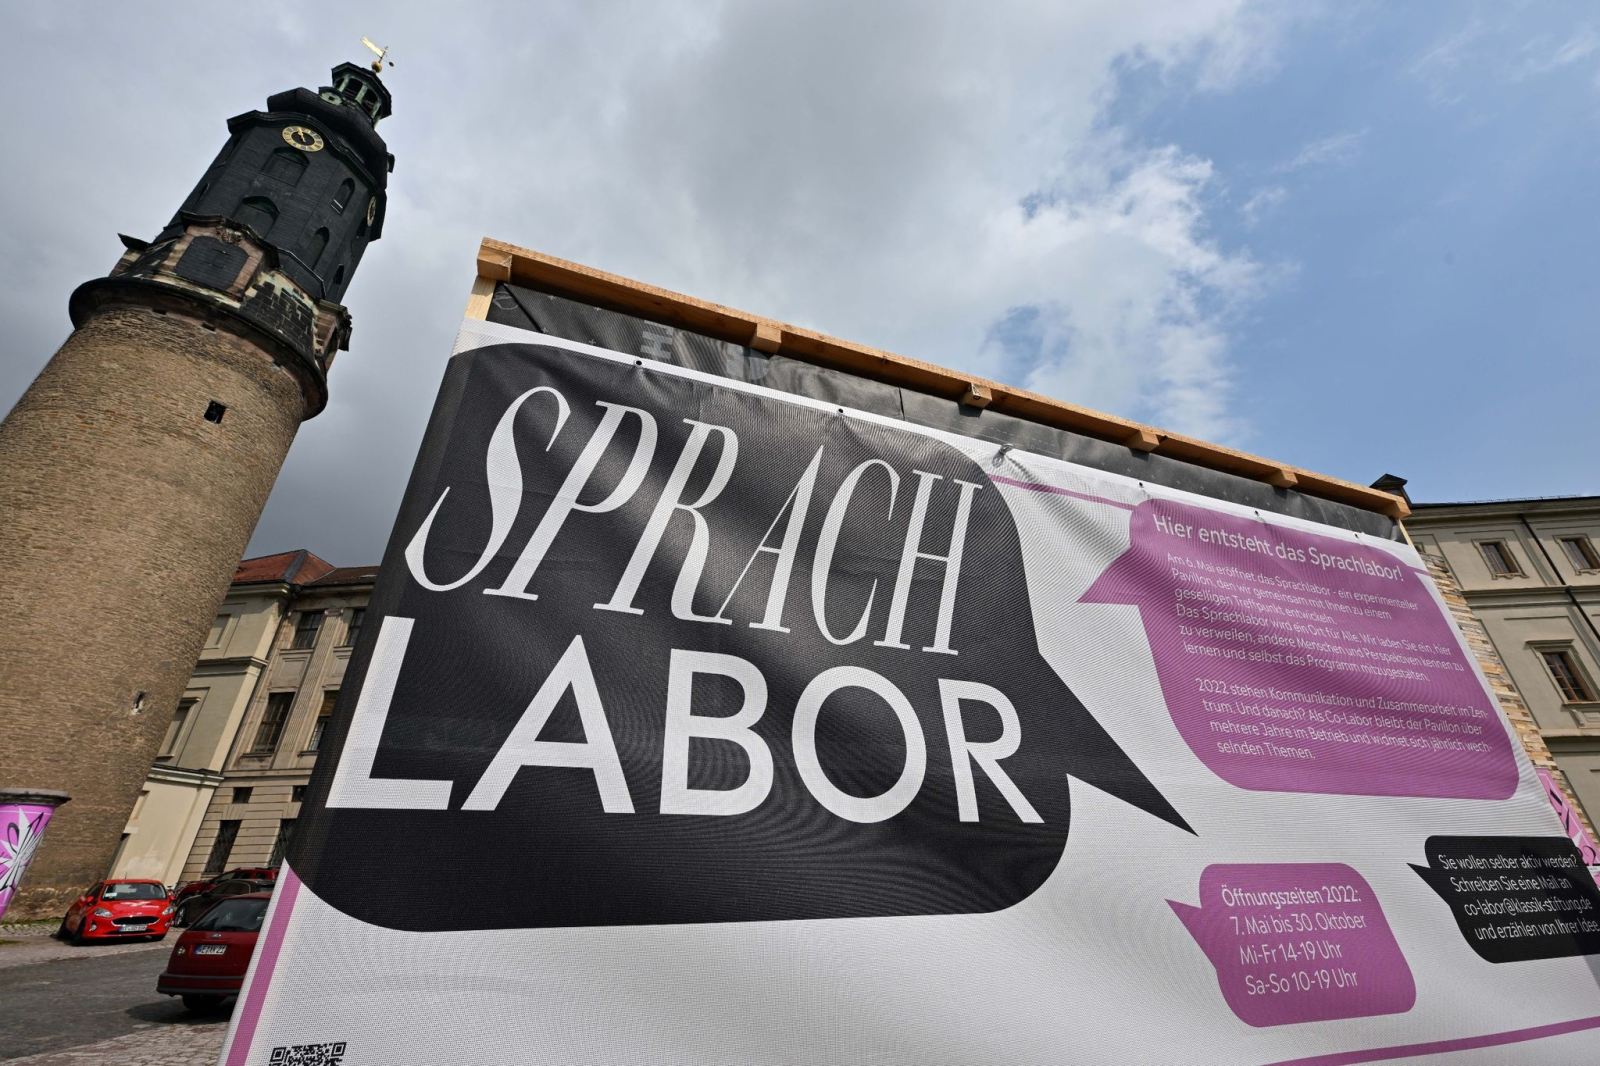 Das Themenjahr "Sprache" der Klassik Stiftung Weimar wird an einem Sprachlabor eröffnet.